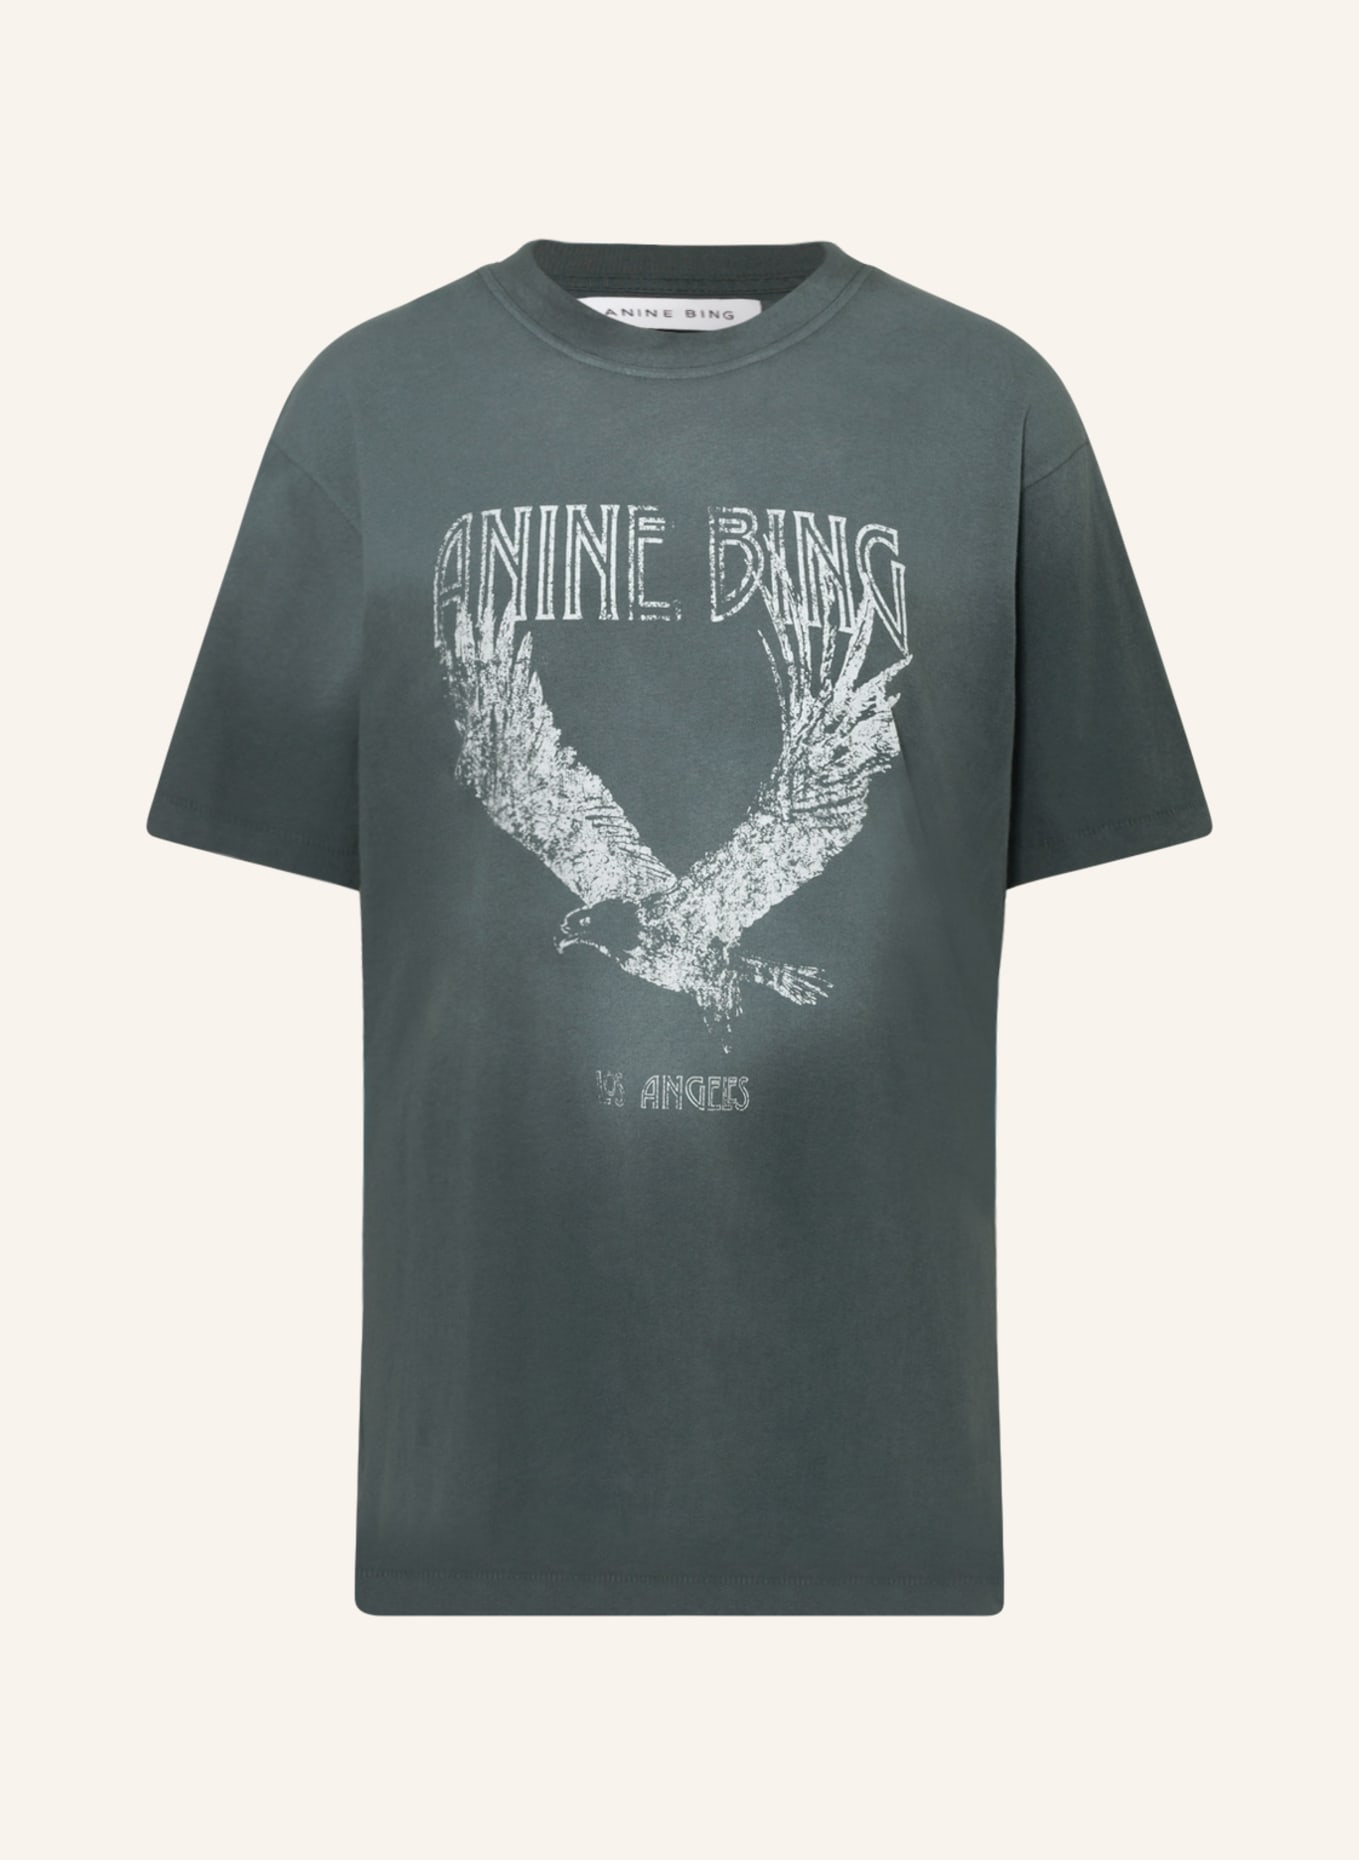 ANINE BING T-shirt EAGLE, Color: TEAL (Image 1)